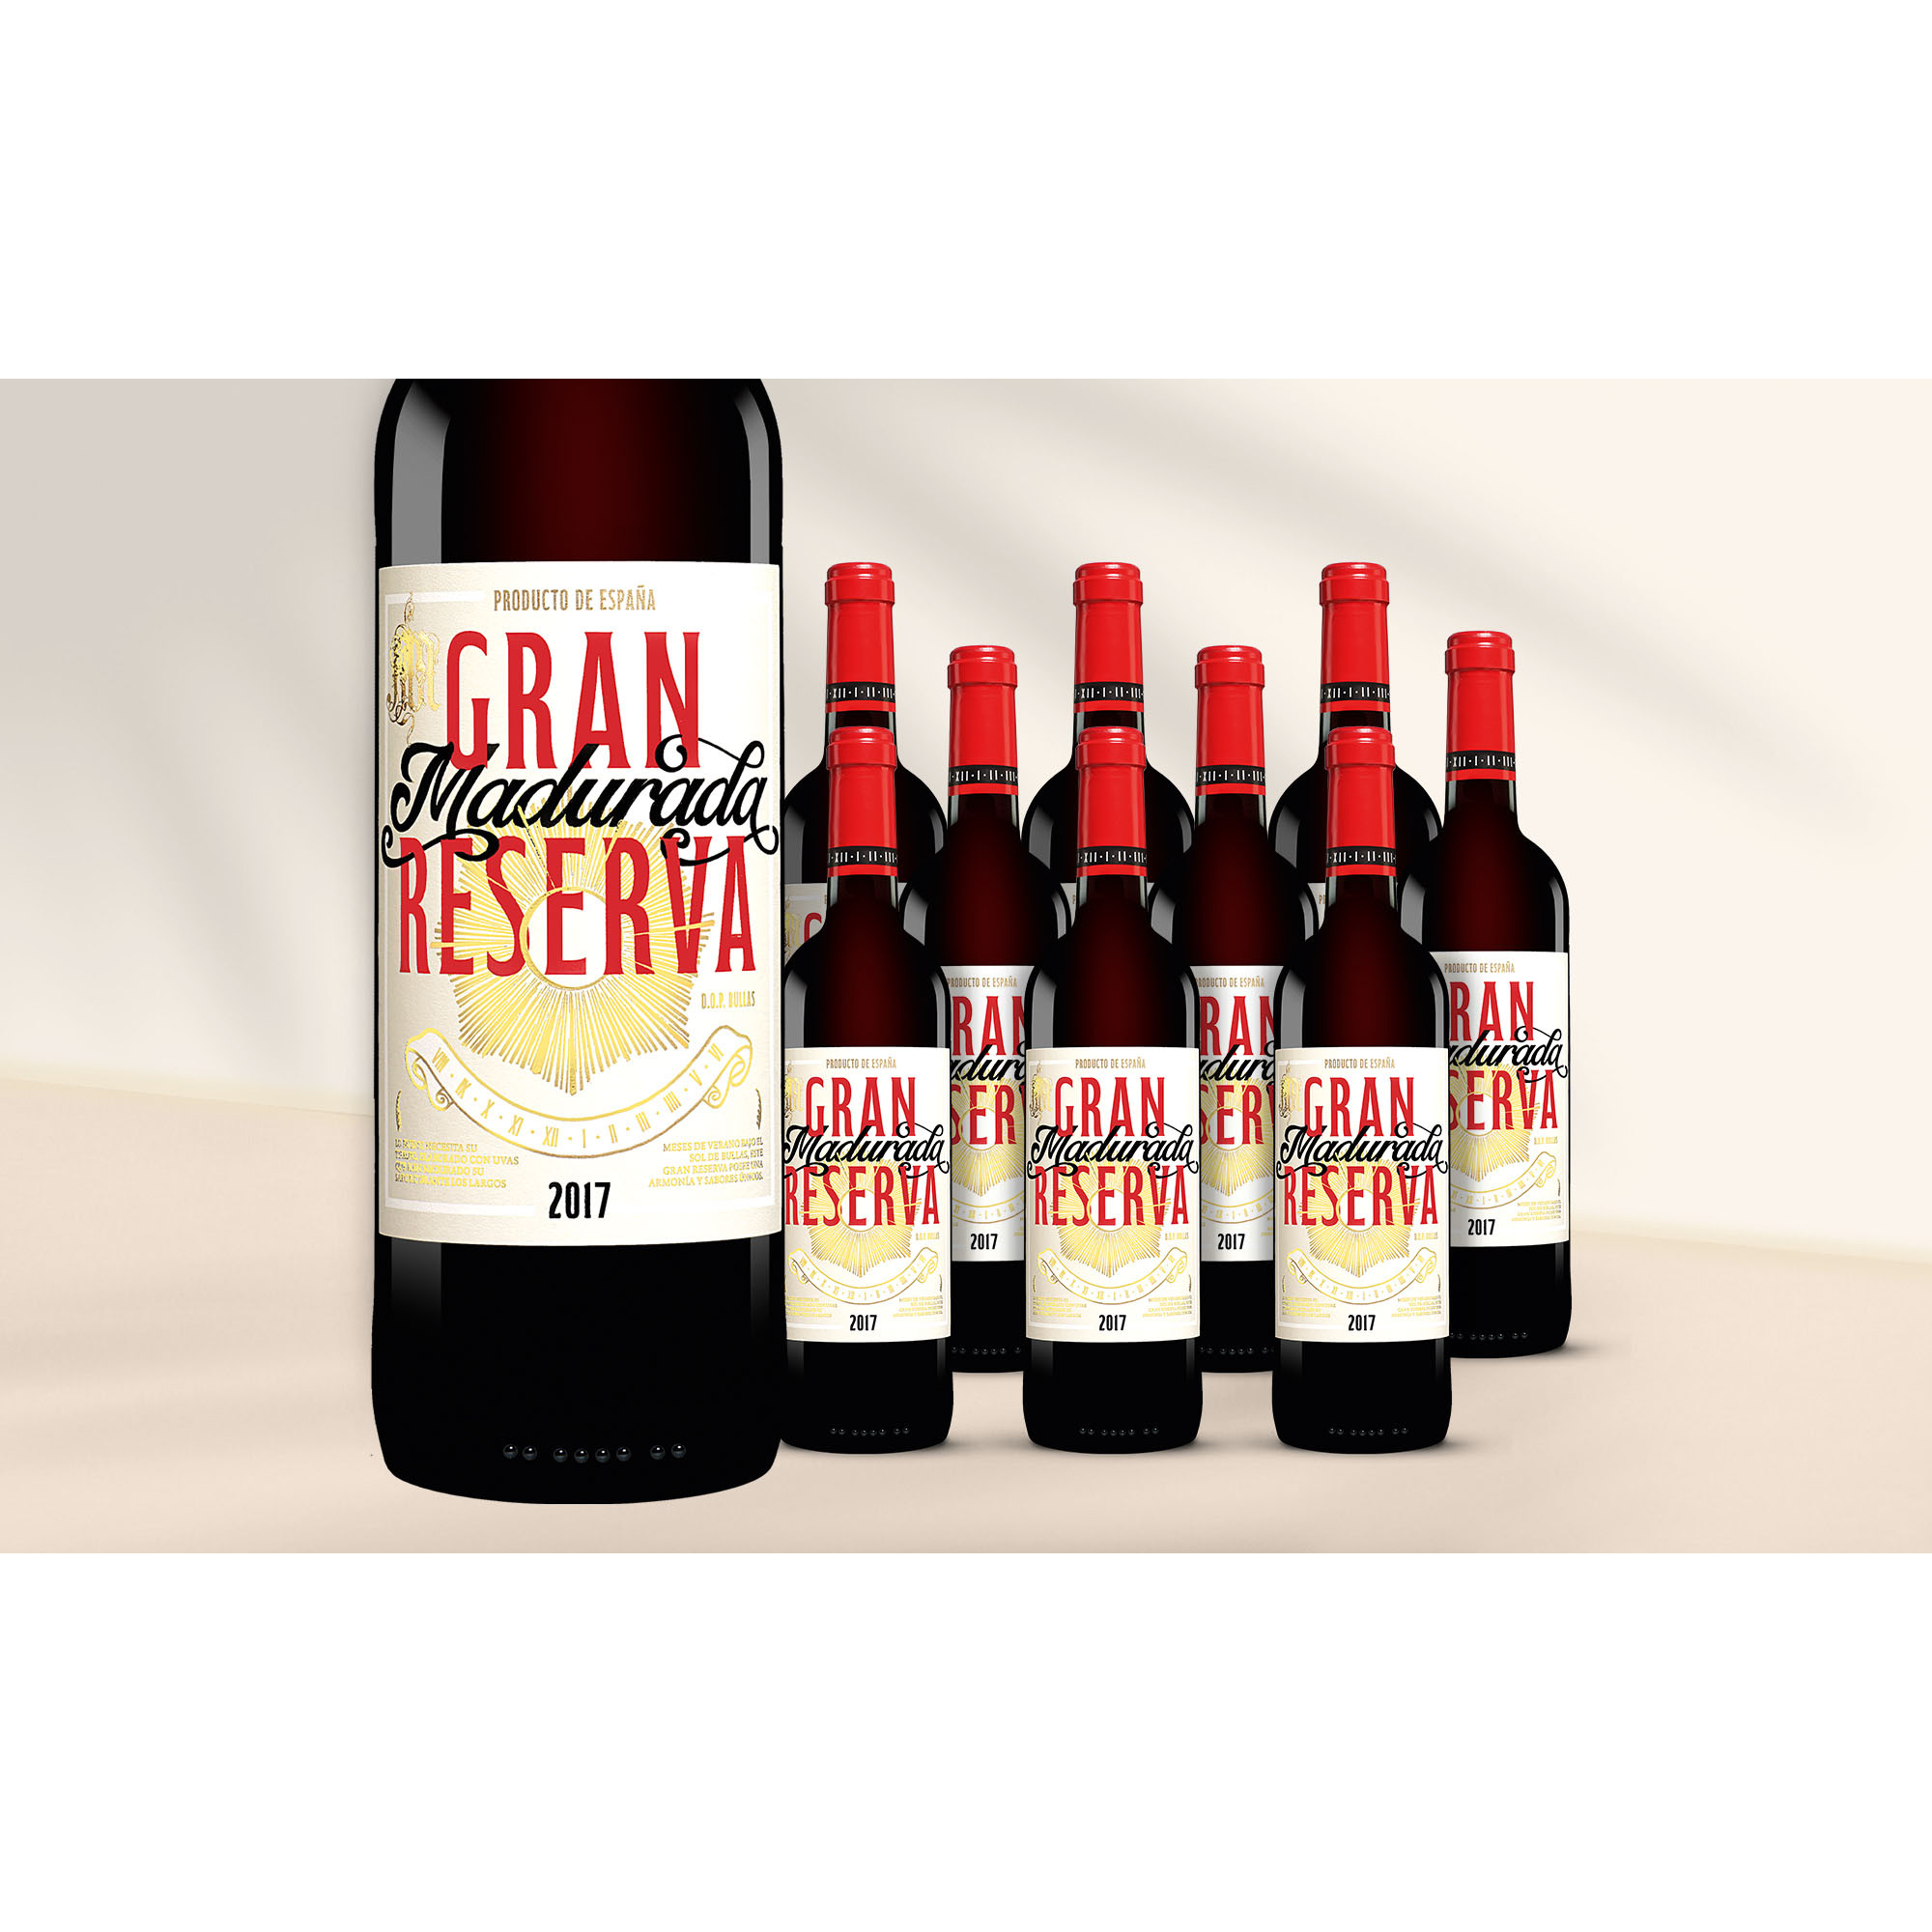 Madurada Gran Reserva 2017  714% Vol. Weinpaket aus Spanien